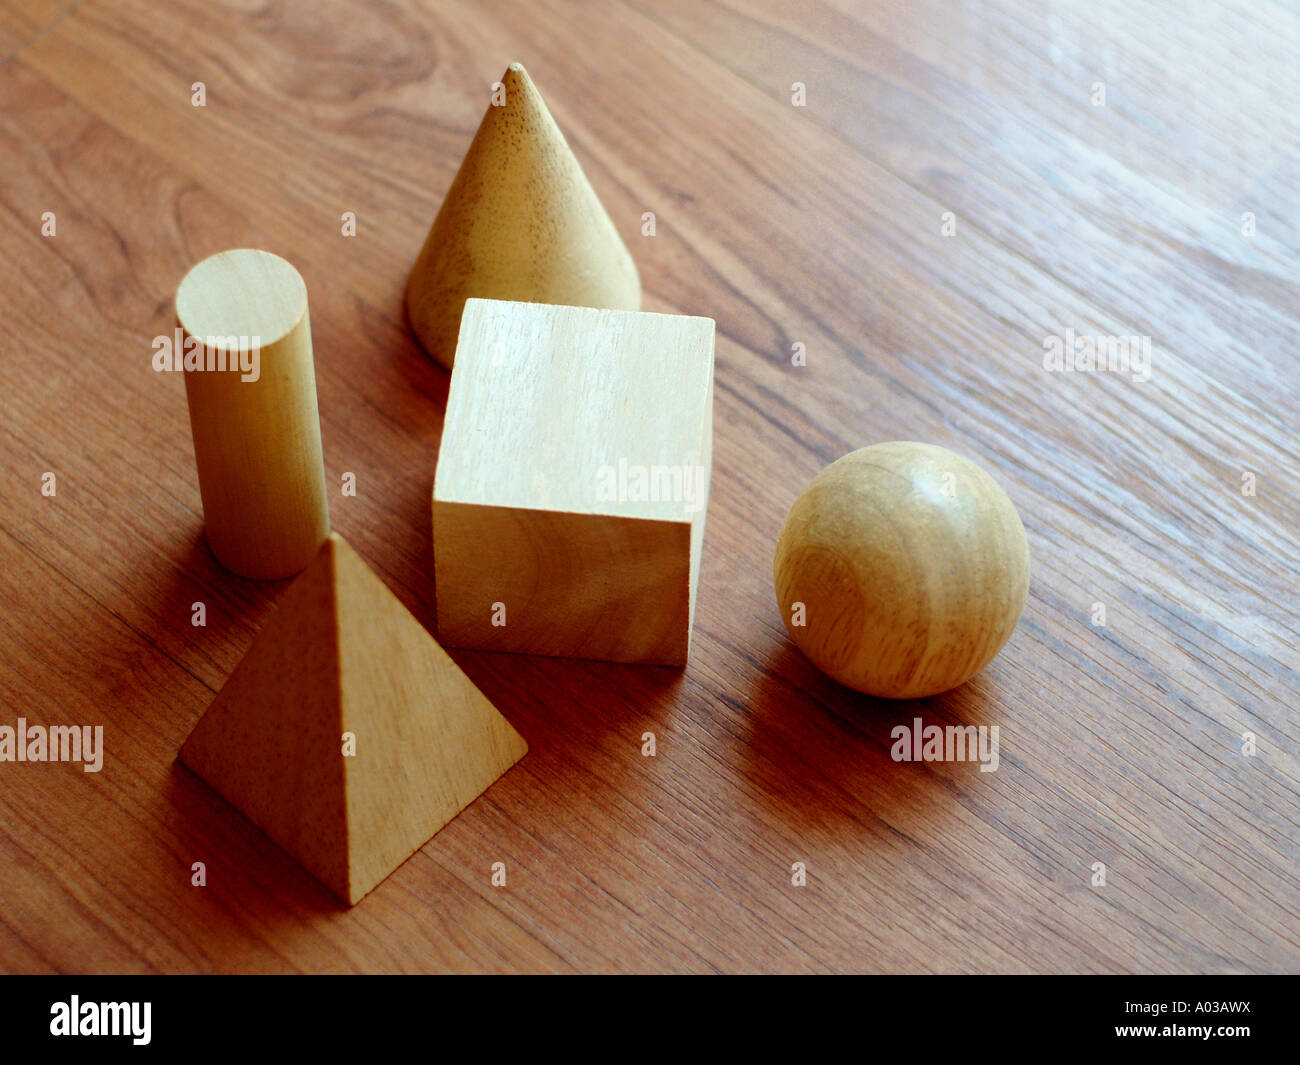 Blocchi di legno in varie forme geometriche su una superficie in legno, chiudere la vista. Foto Stock